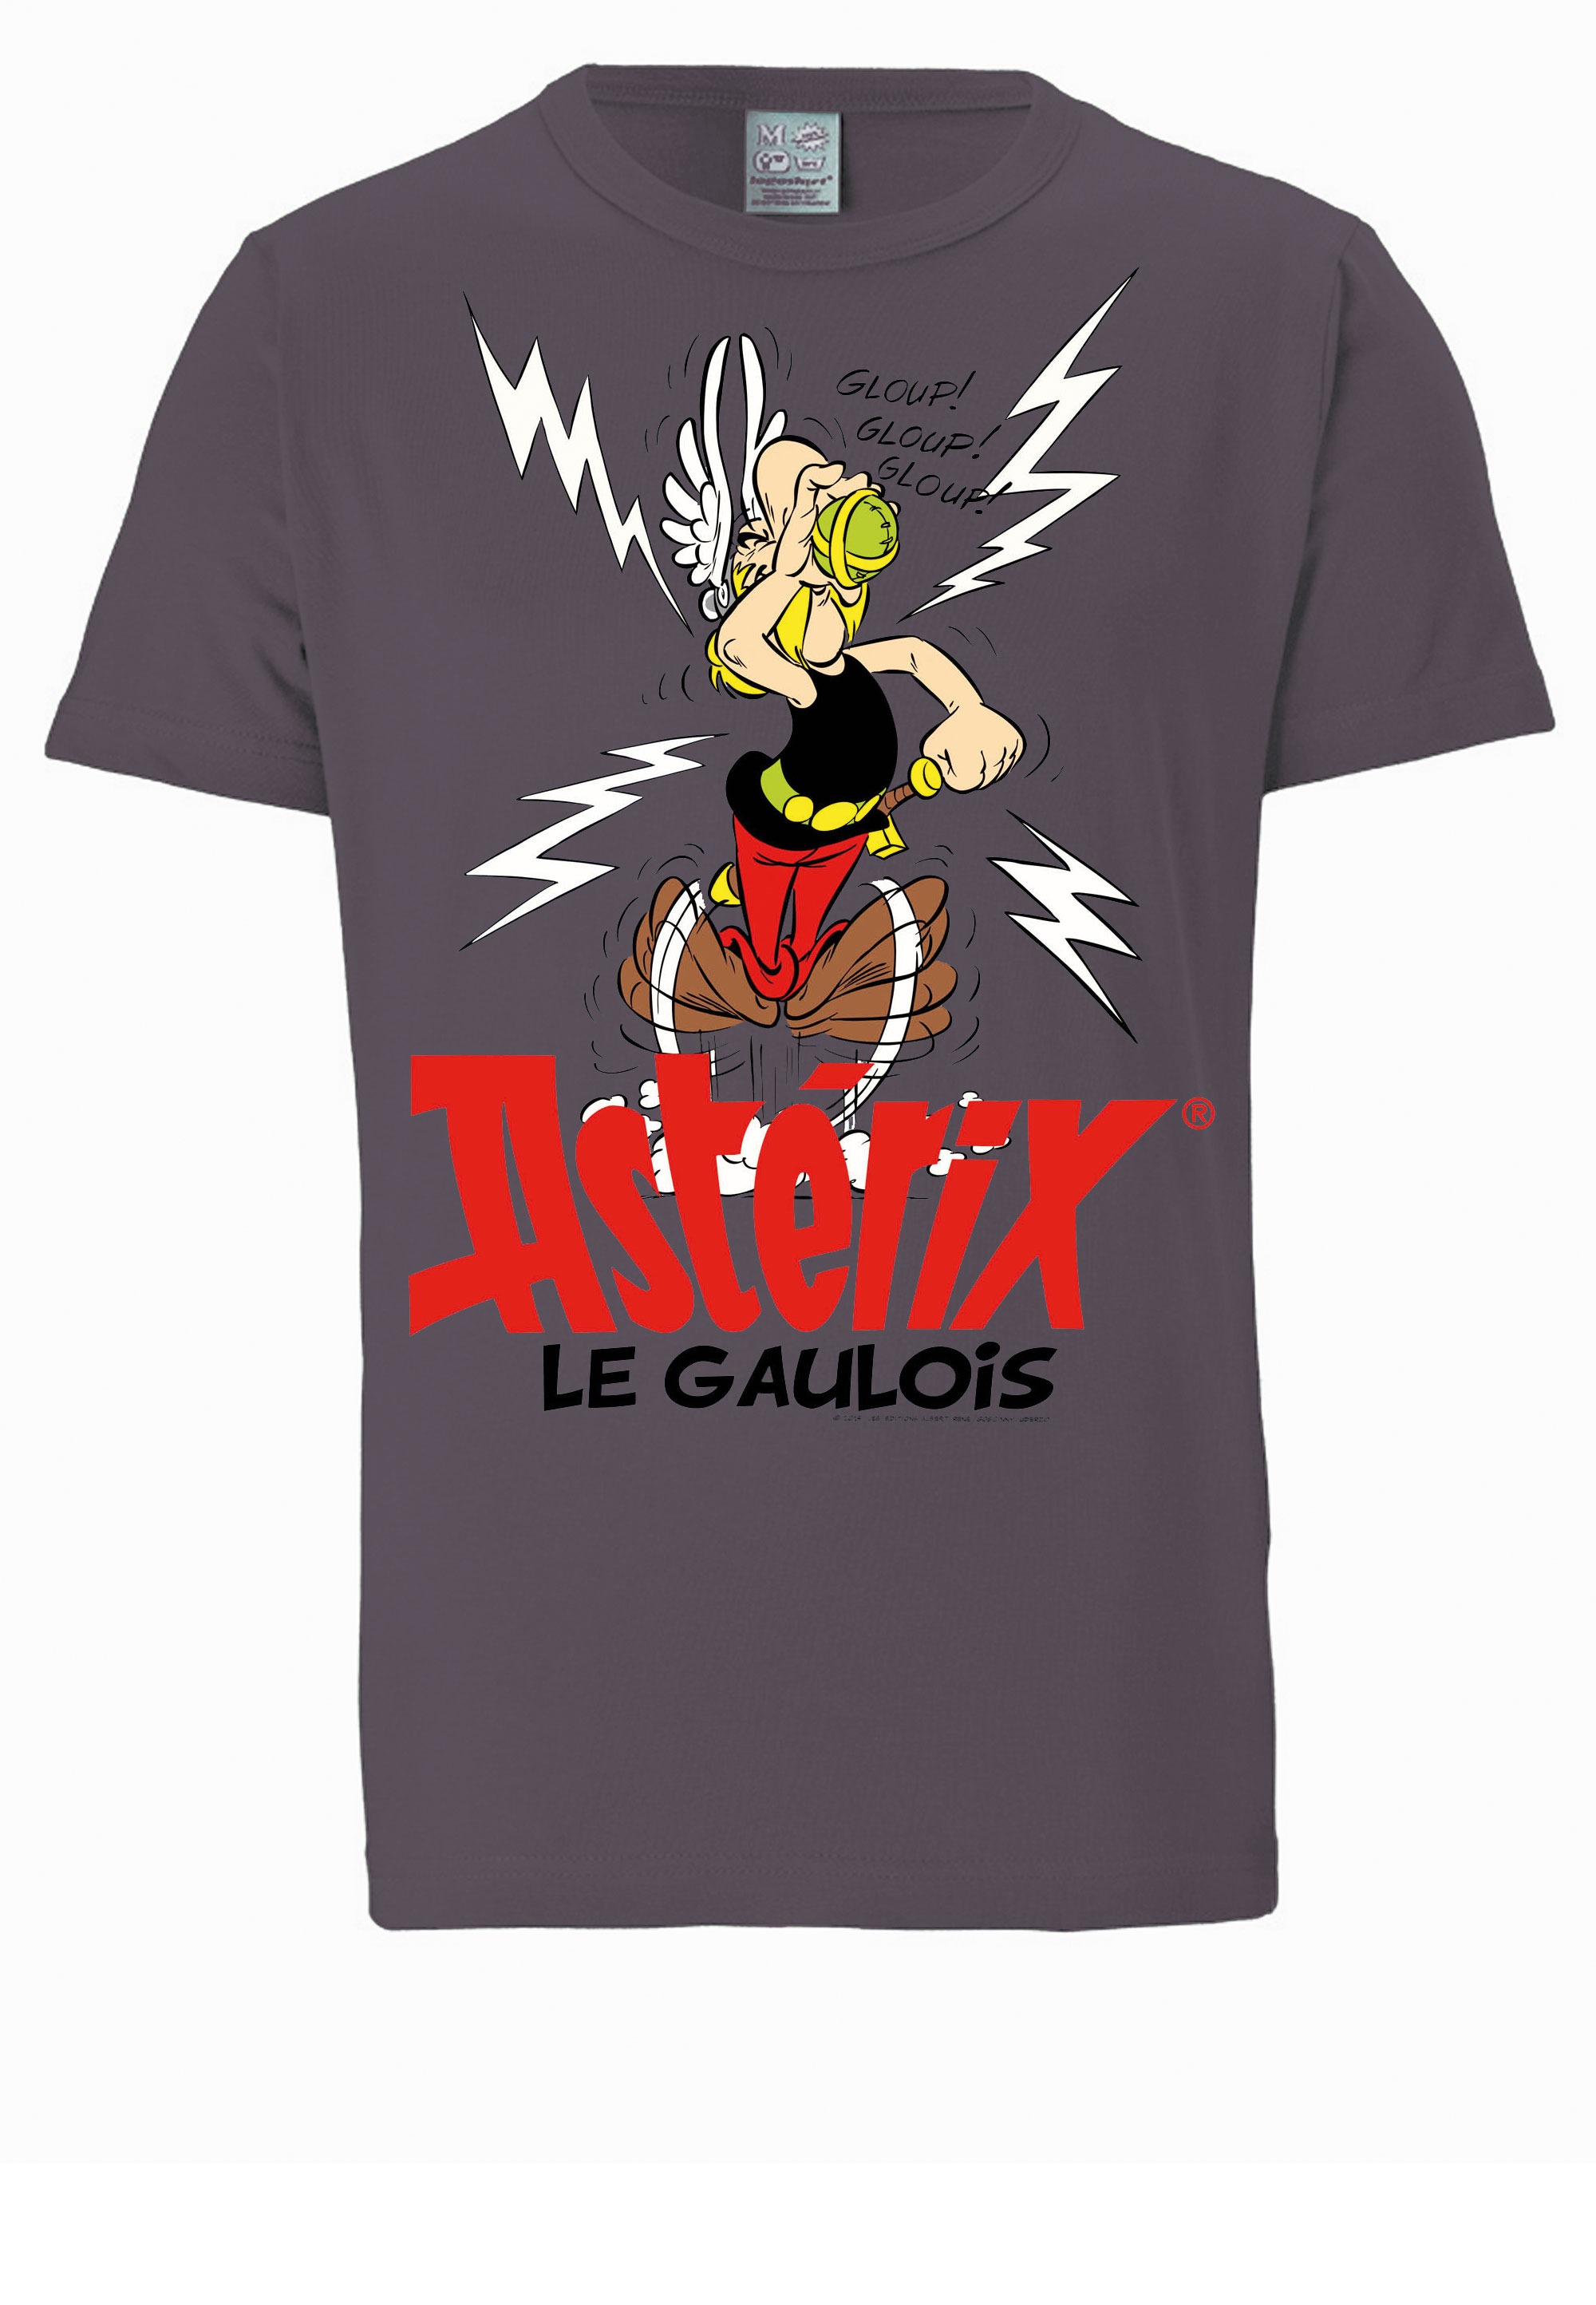 LOGOSHIRT T-Shirt "Asterix der Gallier - Asterix" günstig online kaufen